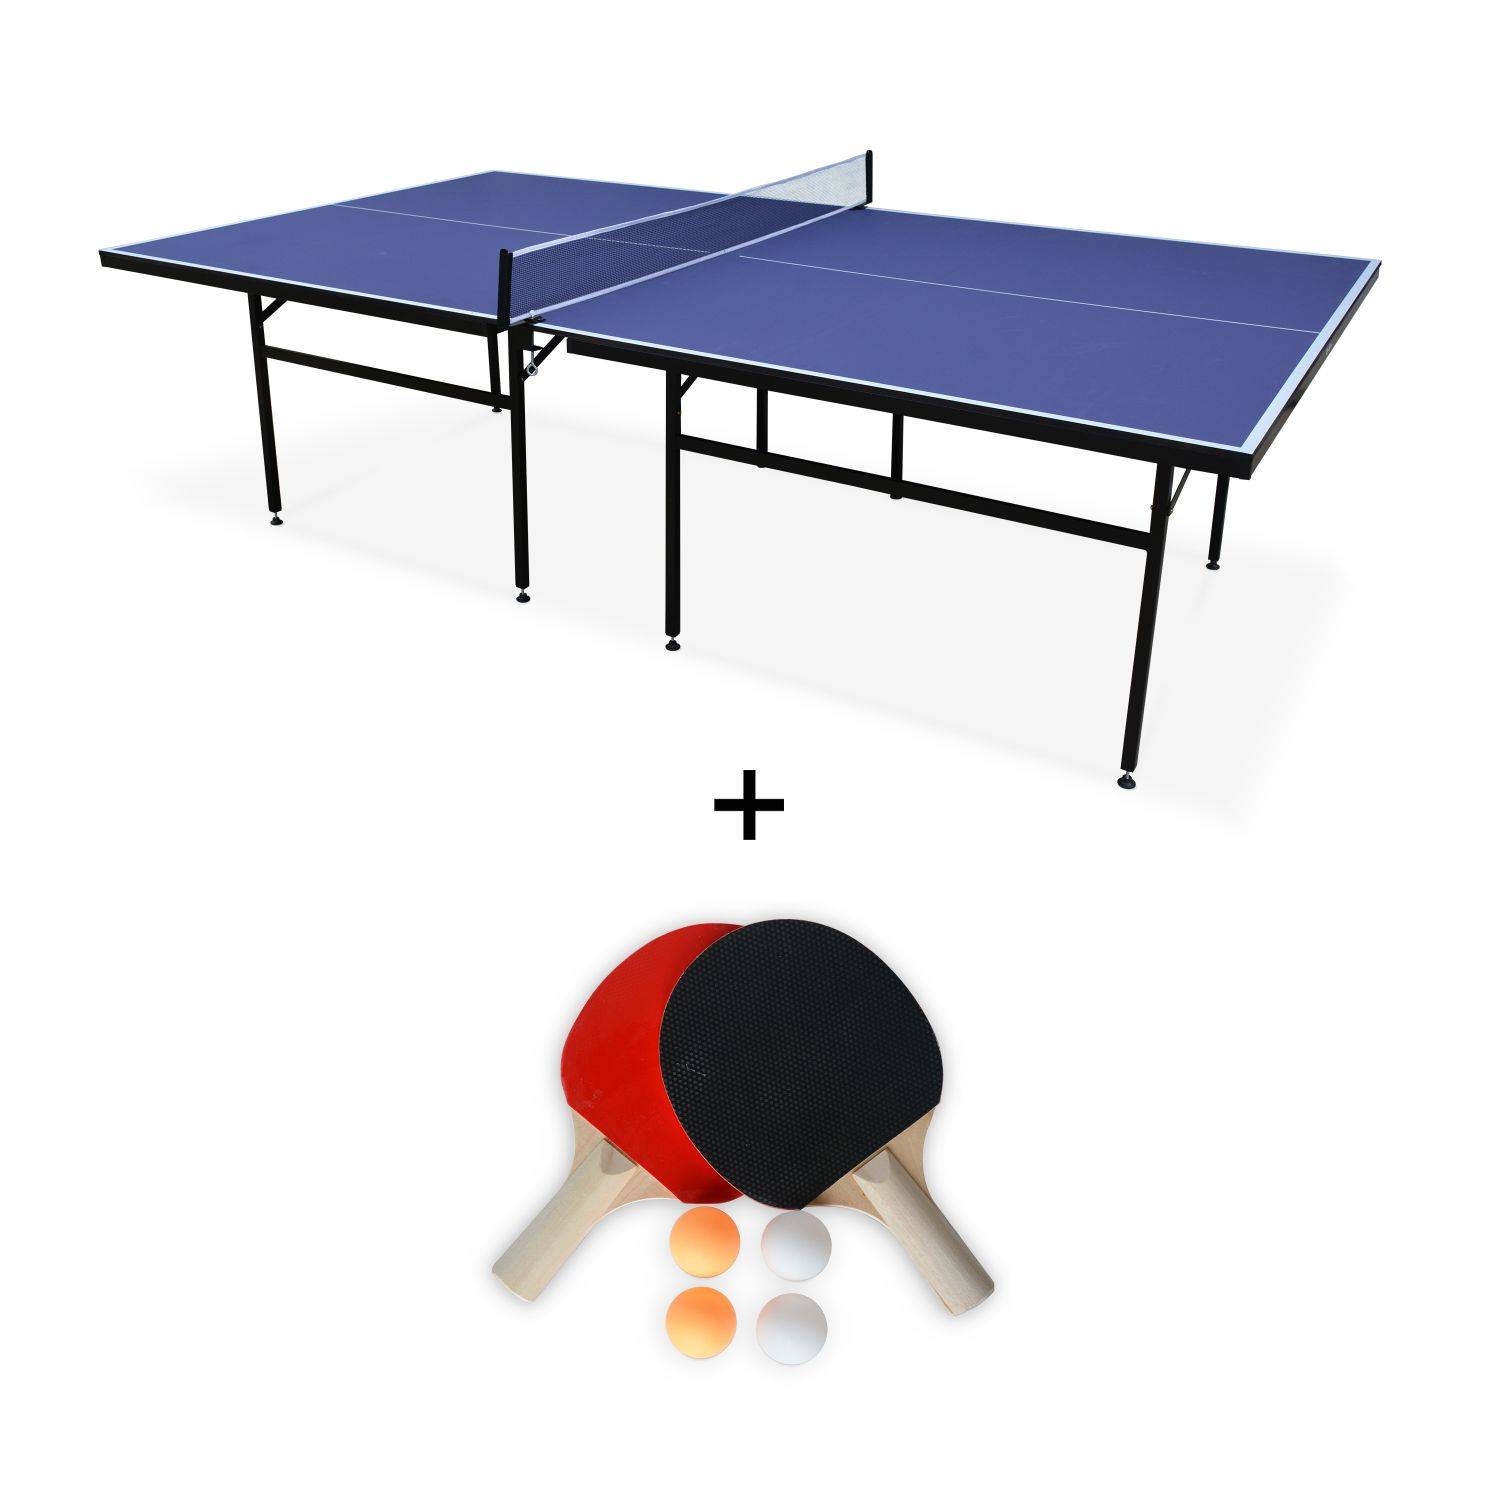 Table de ping pong INDOOR bleue Nagano- table avec 2 raquettes et 4 balles, pour utilisation intérieure, sport tennis de table Photo1